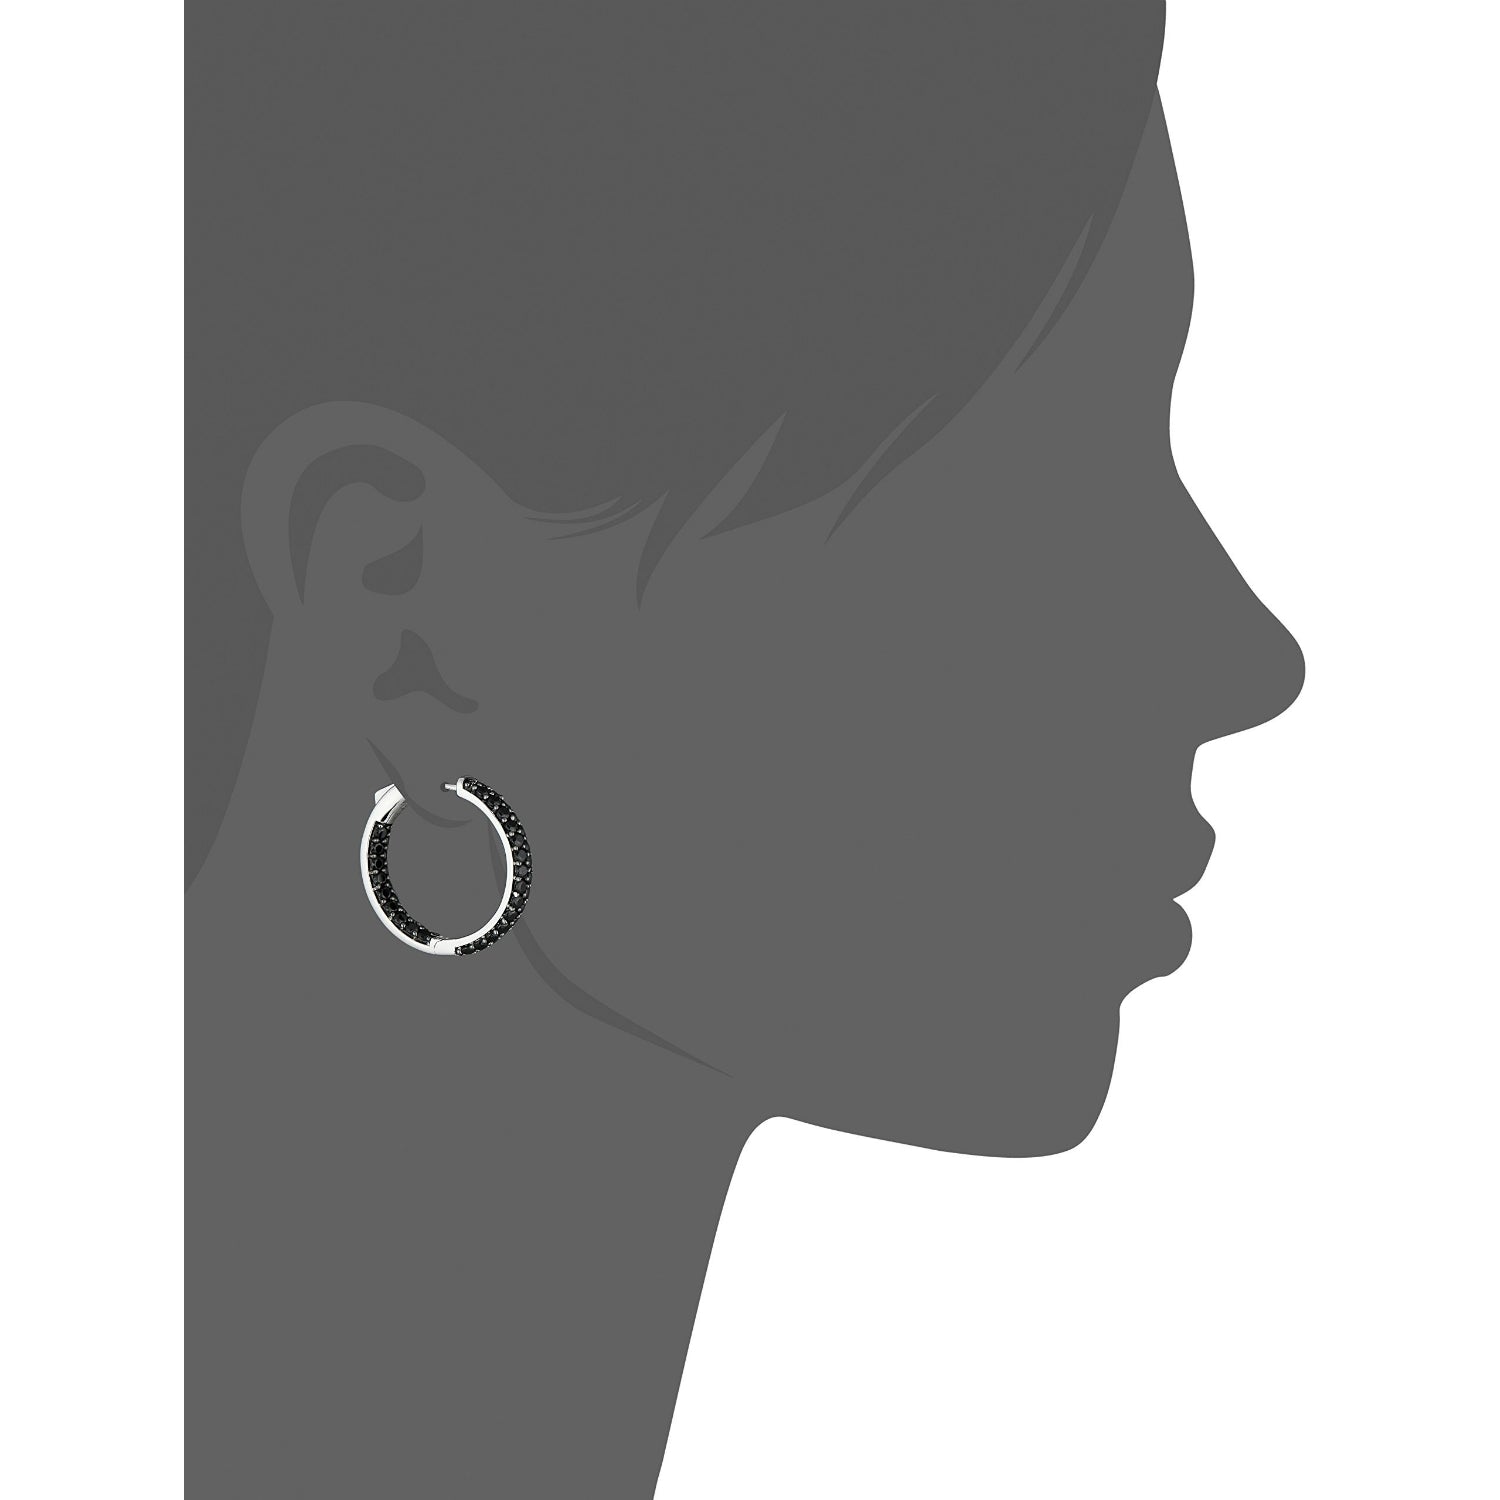 Sterling Silver Black Spinel Round Hoop Earrings, 1" - pinctore